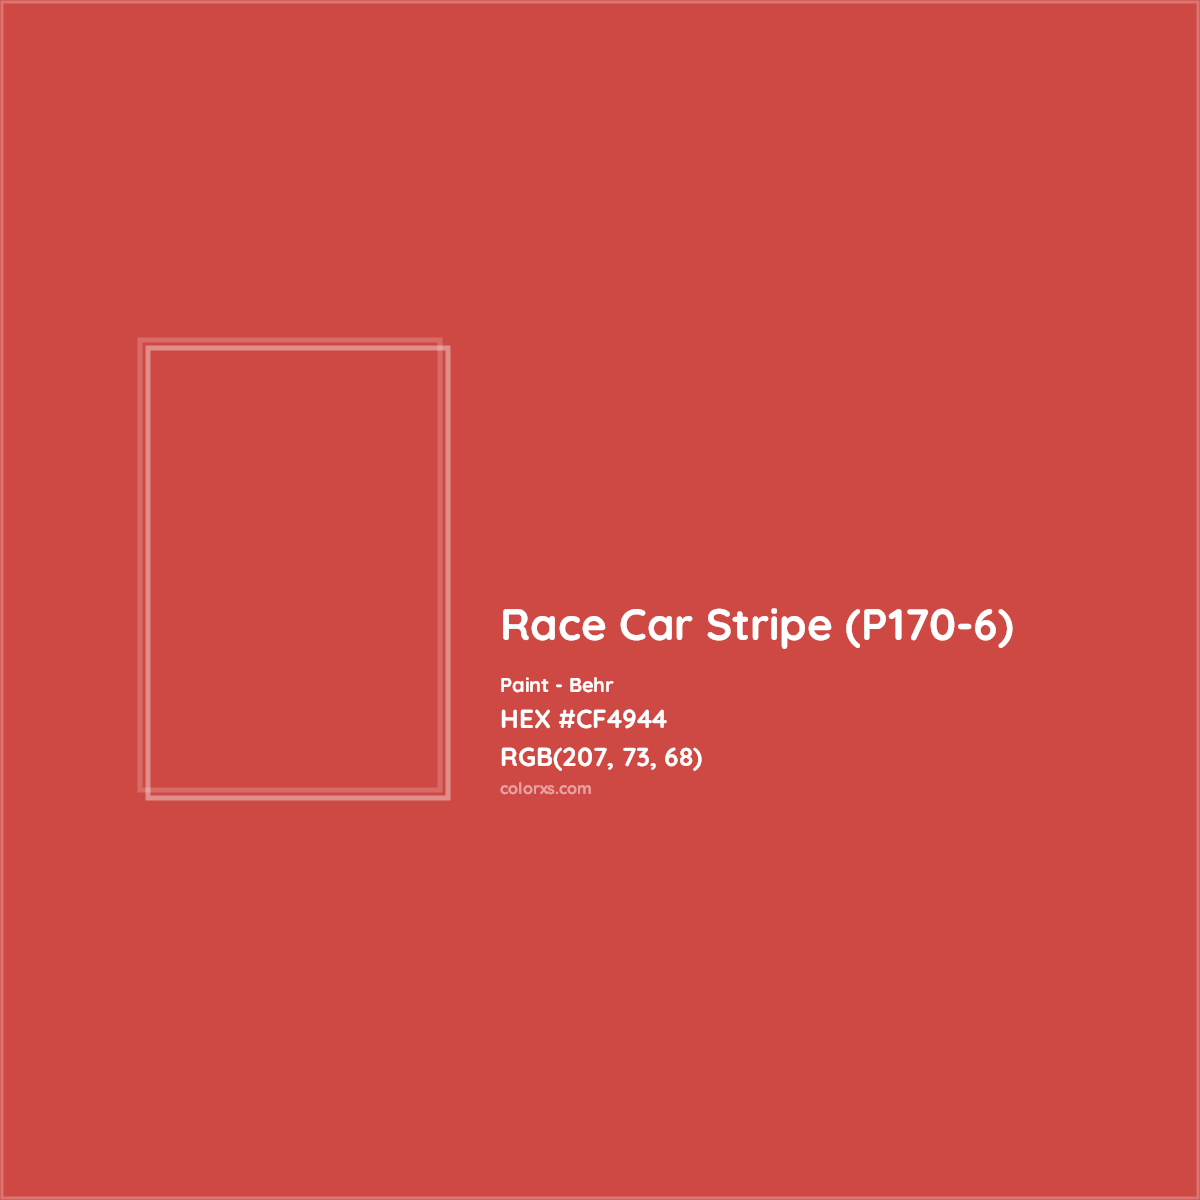 HEX #CF4944 Race Car Stripe (P170-6) Paint Behr - Color Code